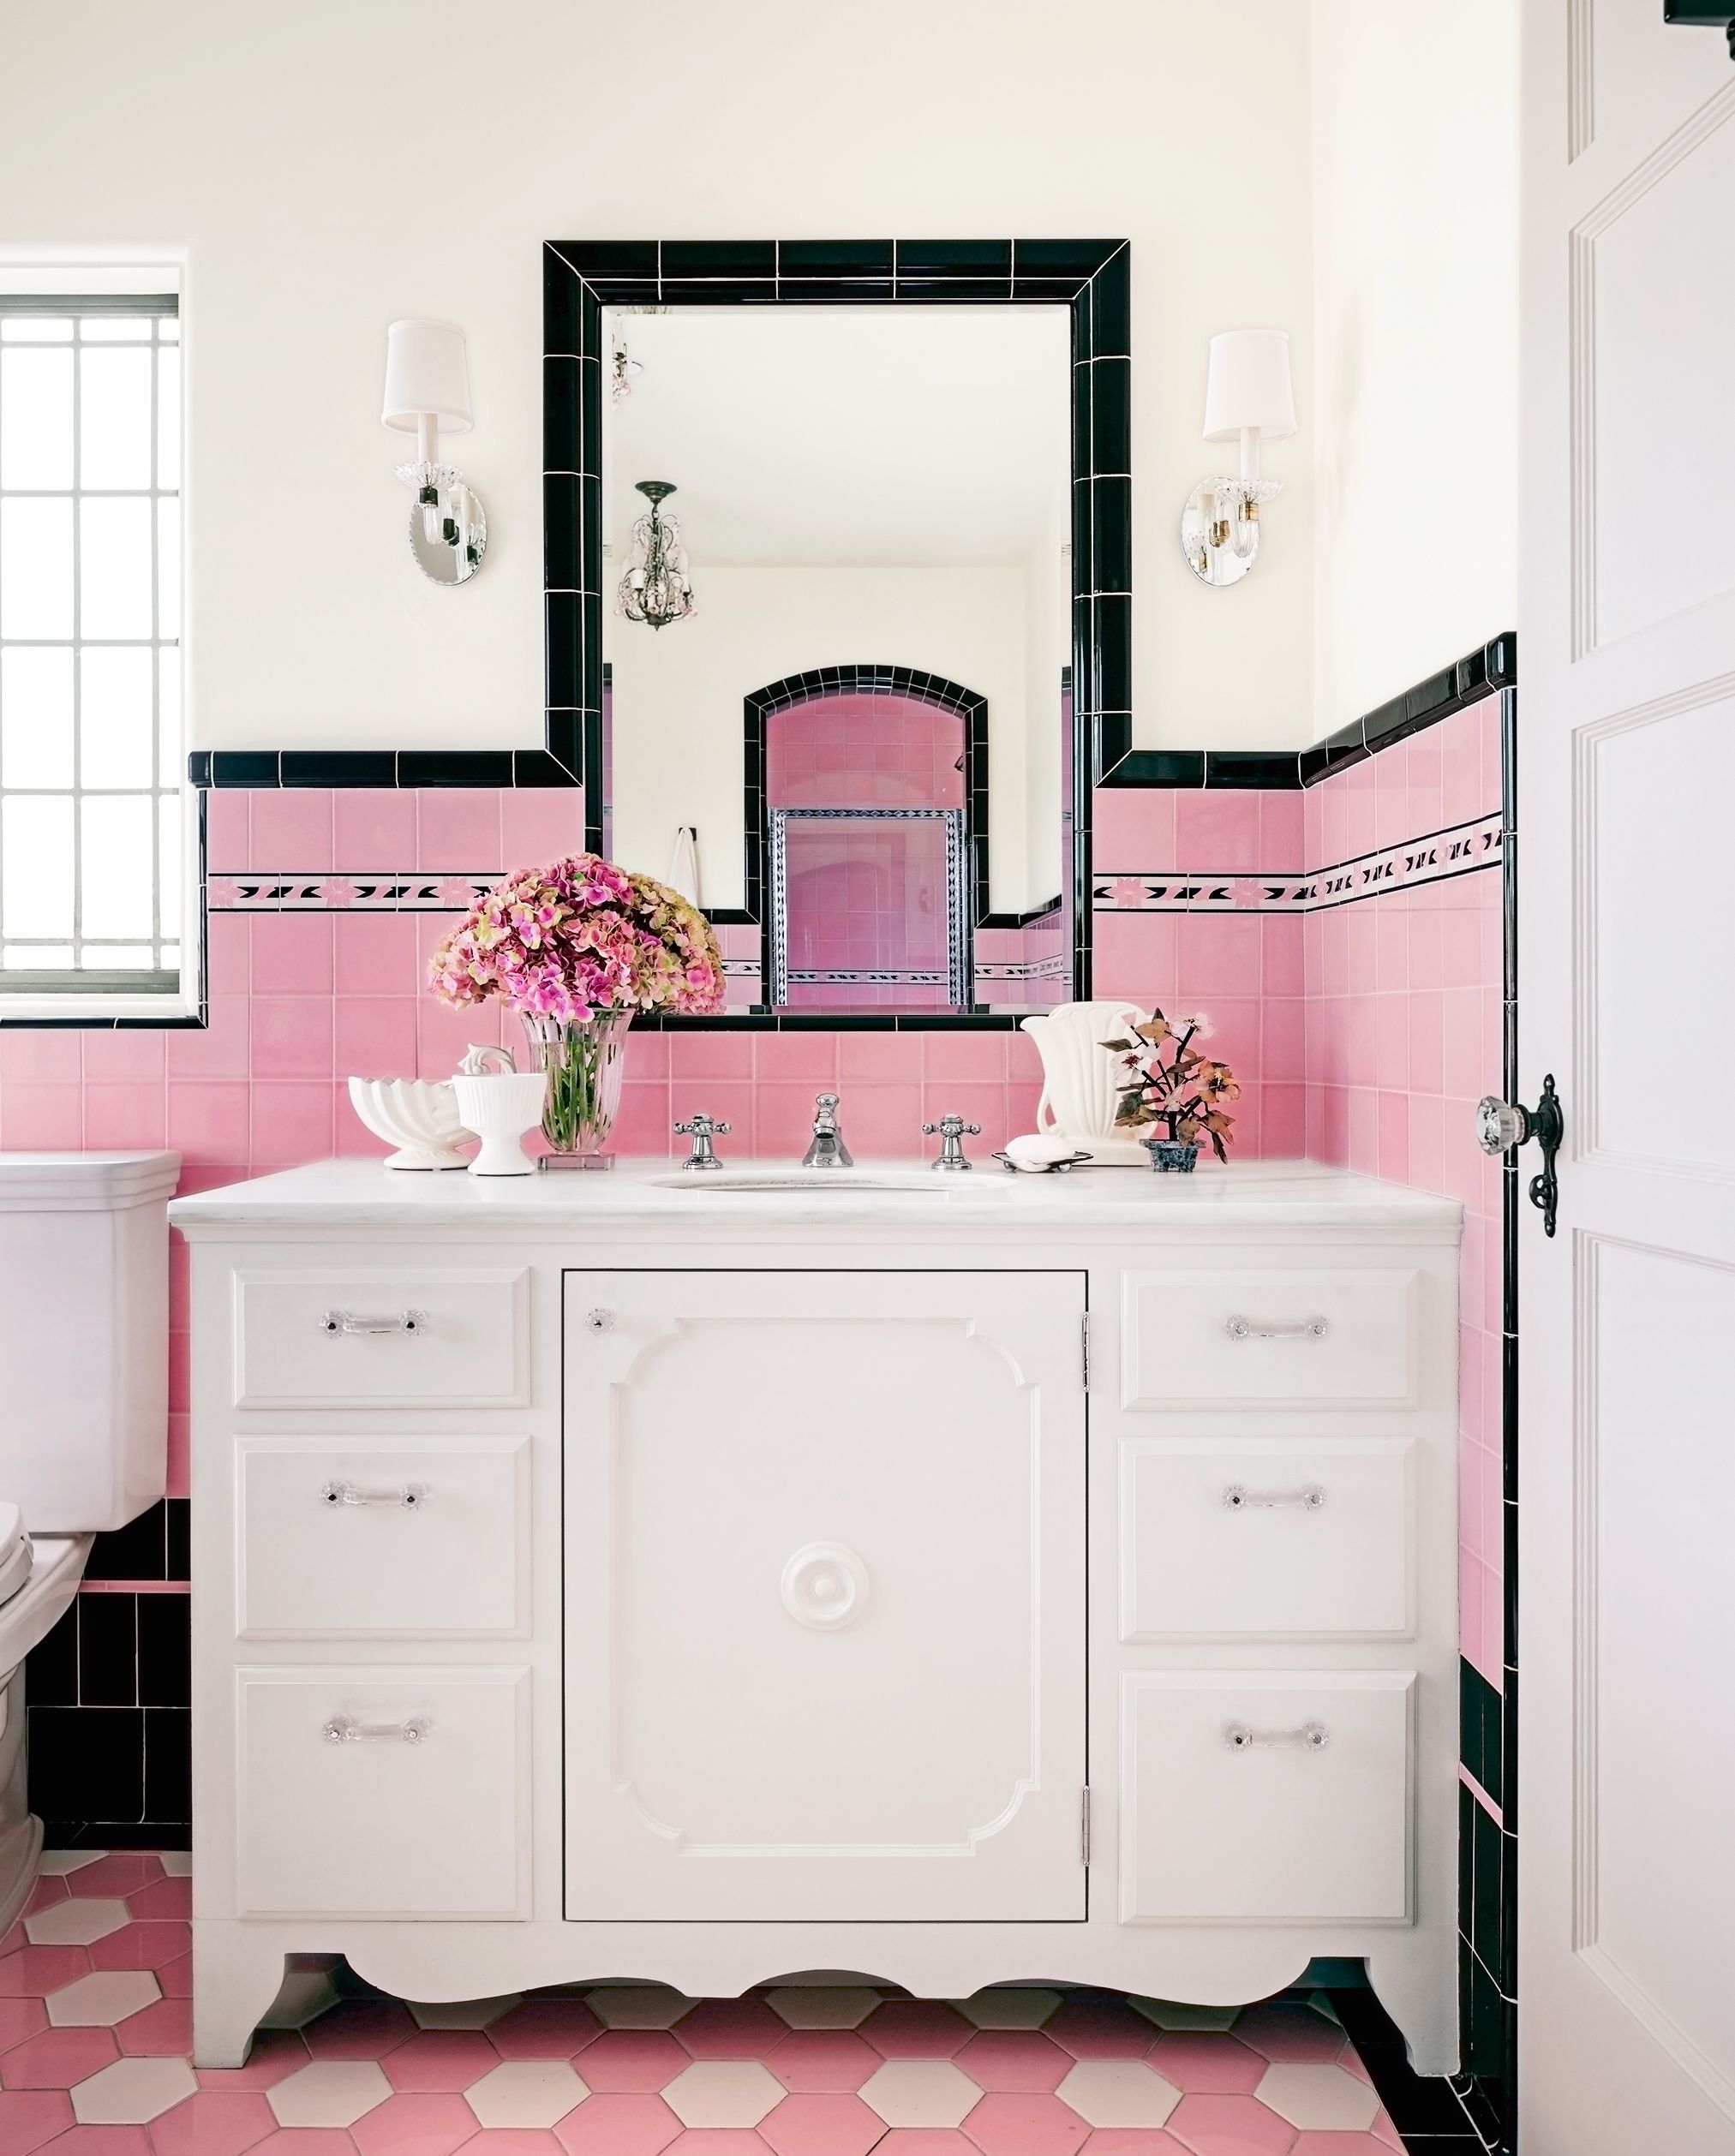 Мебель для ванной комнаты розового цвета